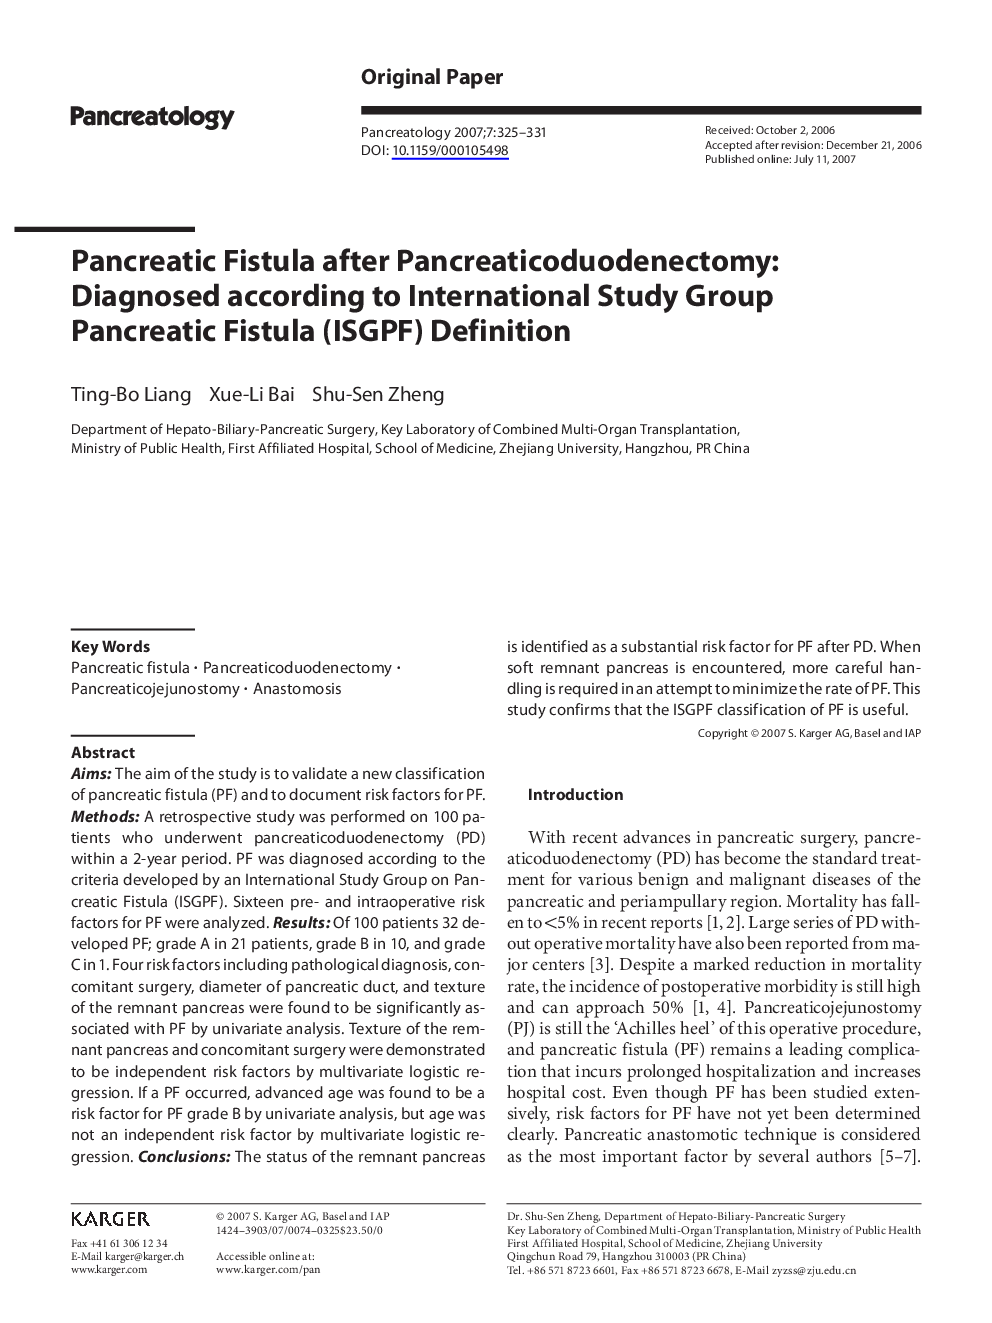 Pancreatic Fistula after Pancreaticoduodenectomy: Diagnosed according to International Study Group Pancreatic Fistula (ISGPF) Definition